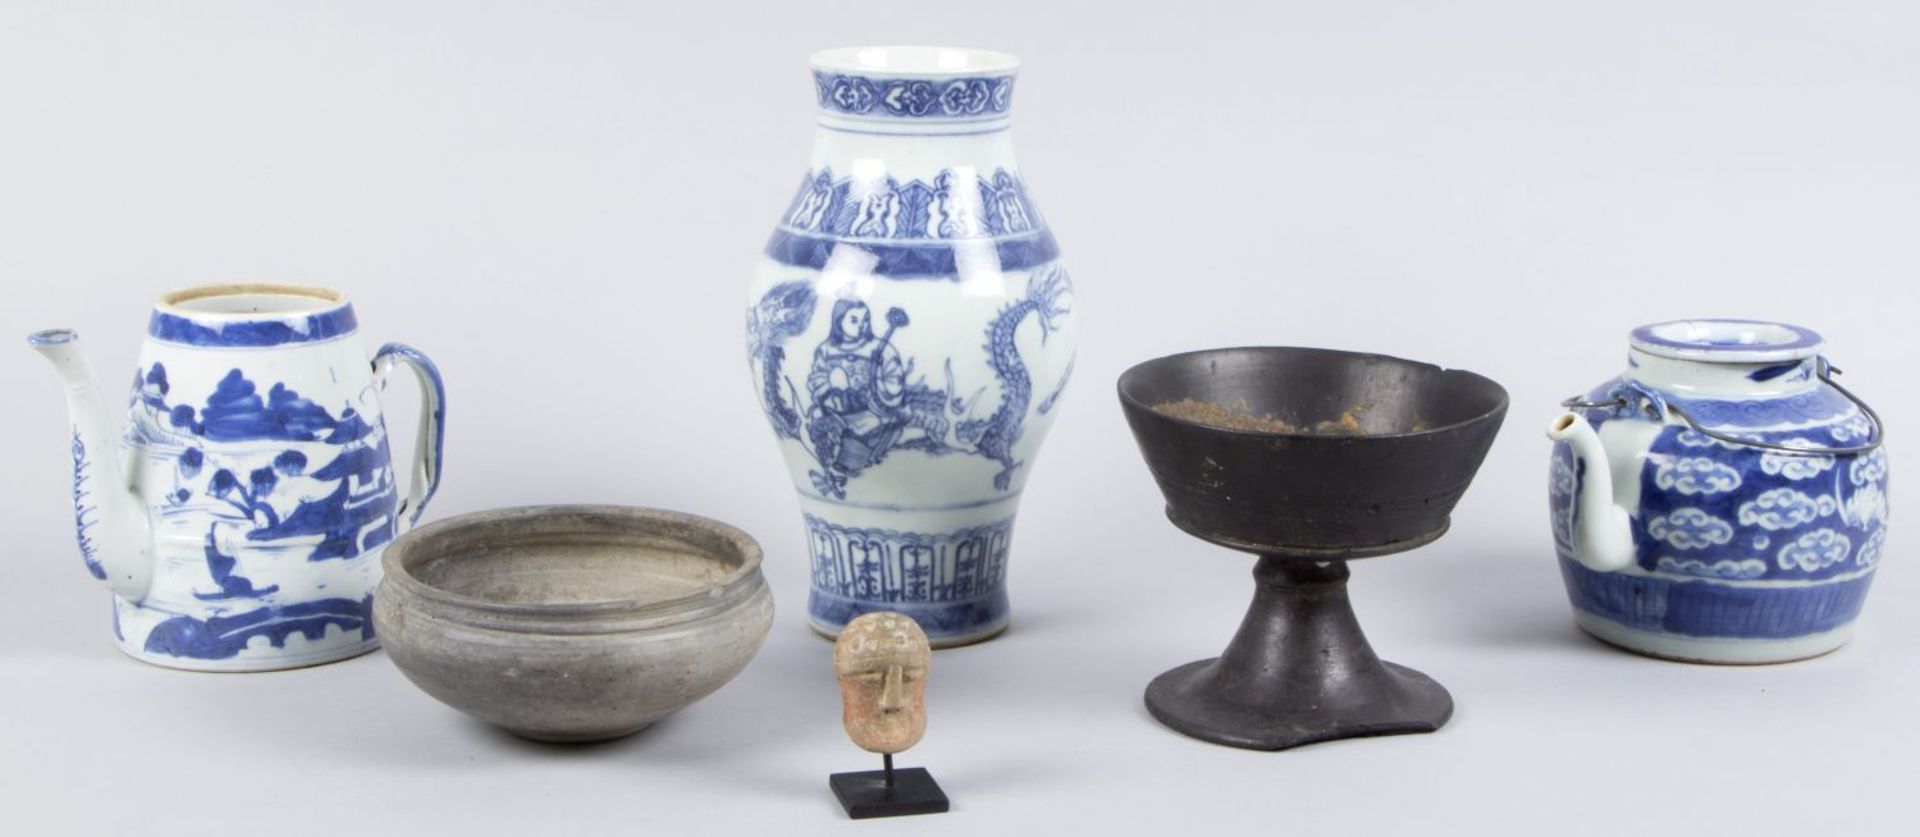 Konvolut Kanne, Thangka, Vase, Puppen u.a. Versch. Materialien. Ca. 20 Teile. Tlw. stark besch. - Bild 2 aus 11